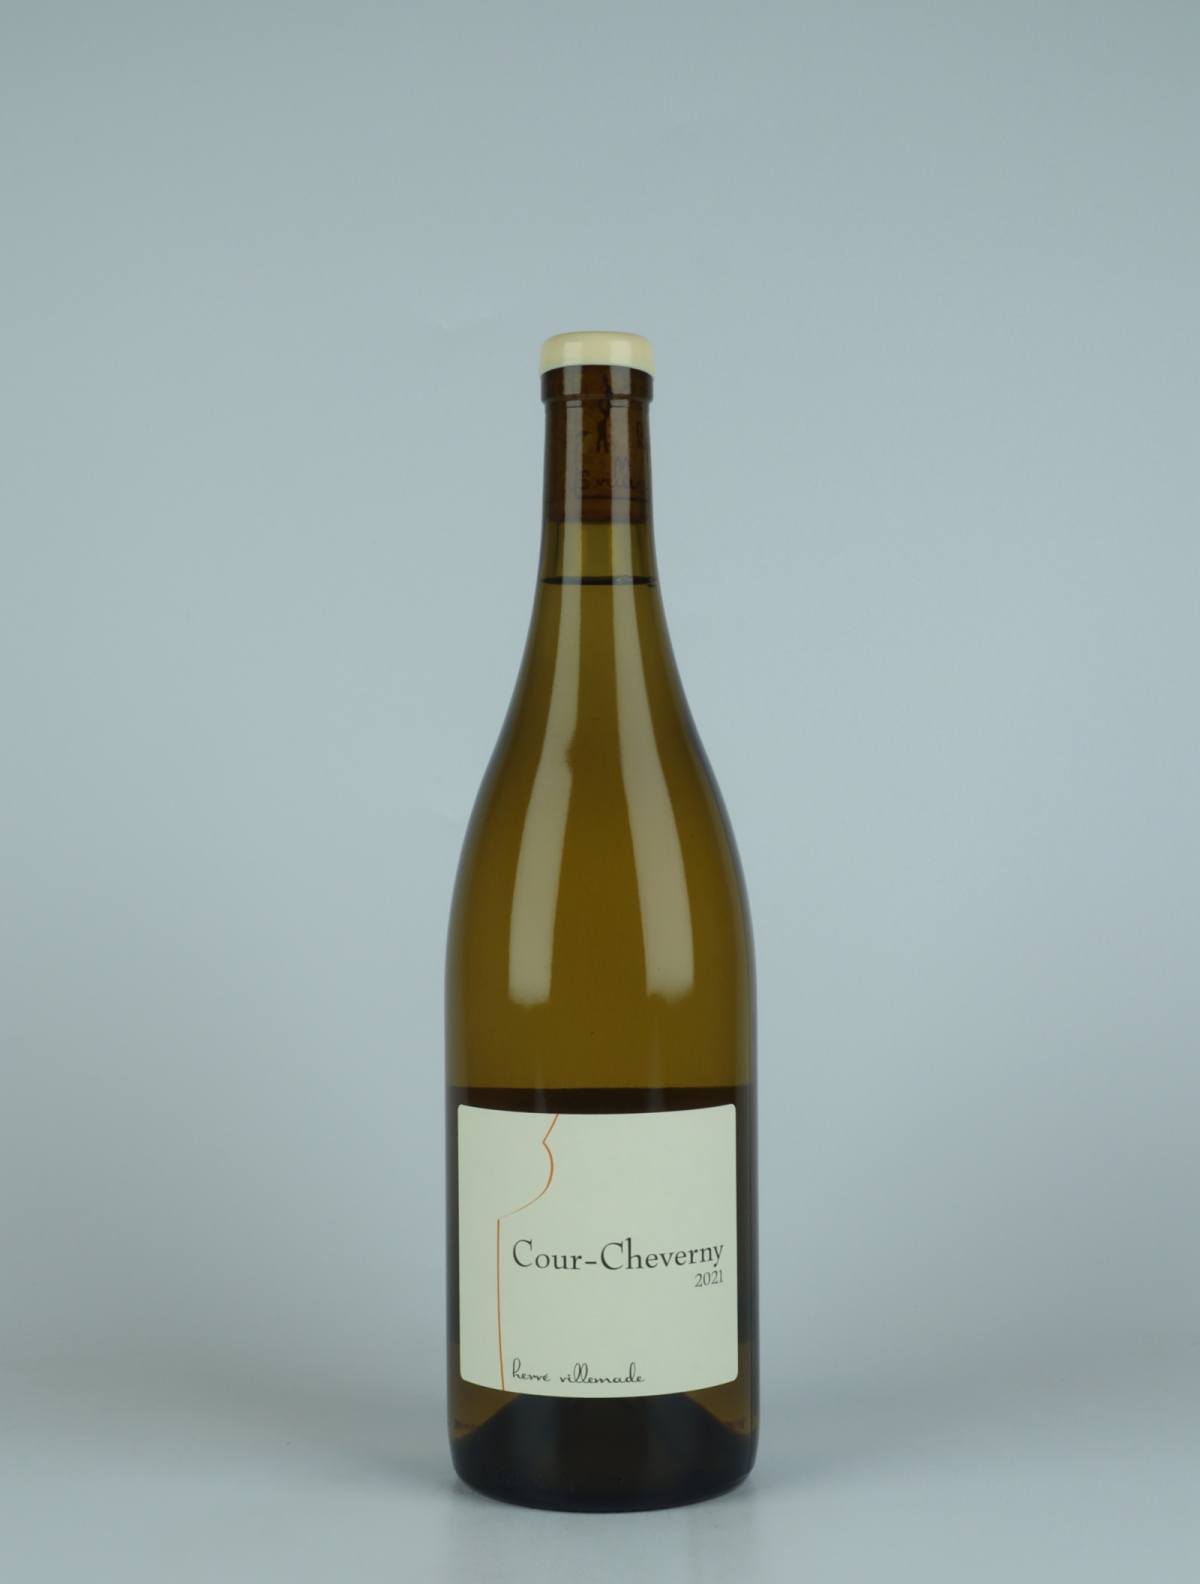 En flaske 2021 Cour-Cheverny - Domaine Hvidvin fra Hervé Villemade, Loire i Frankrig